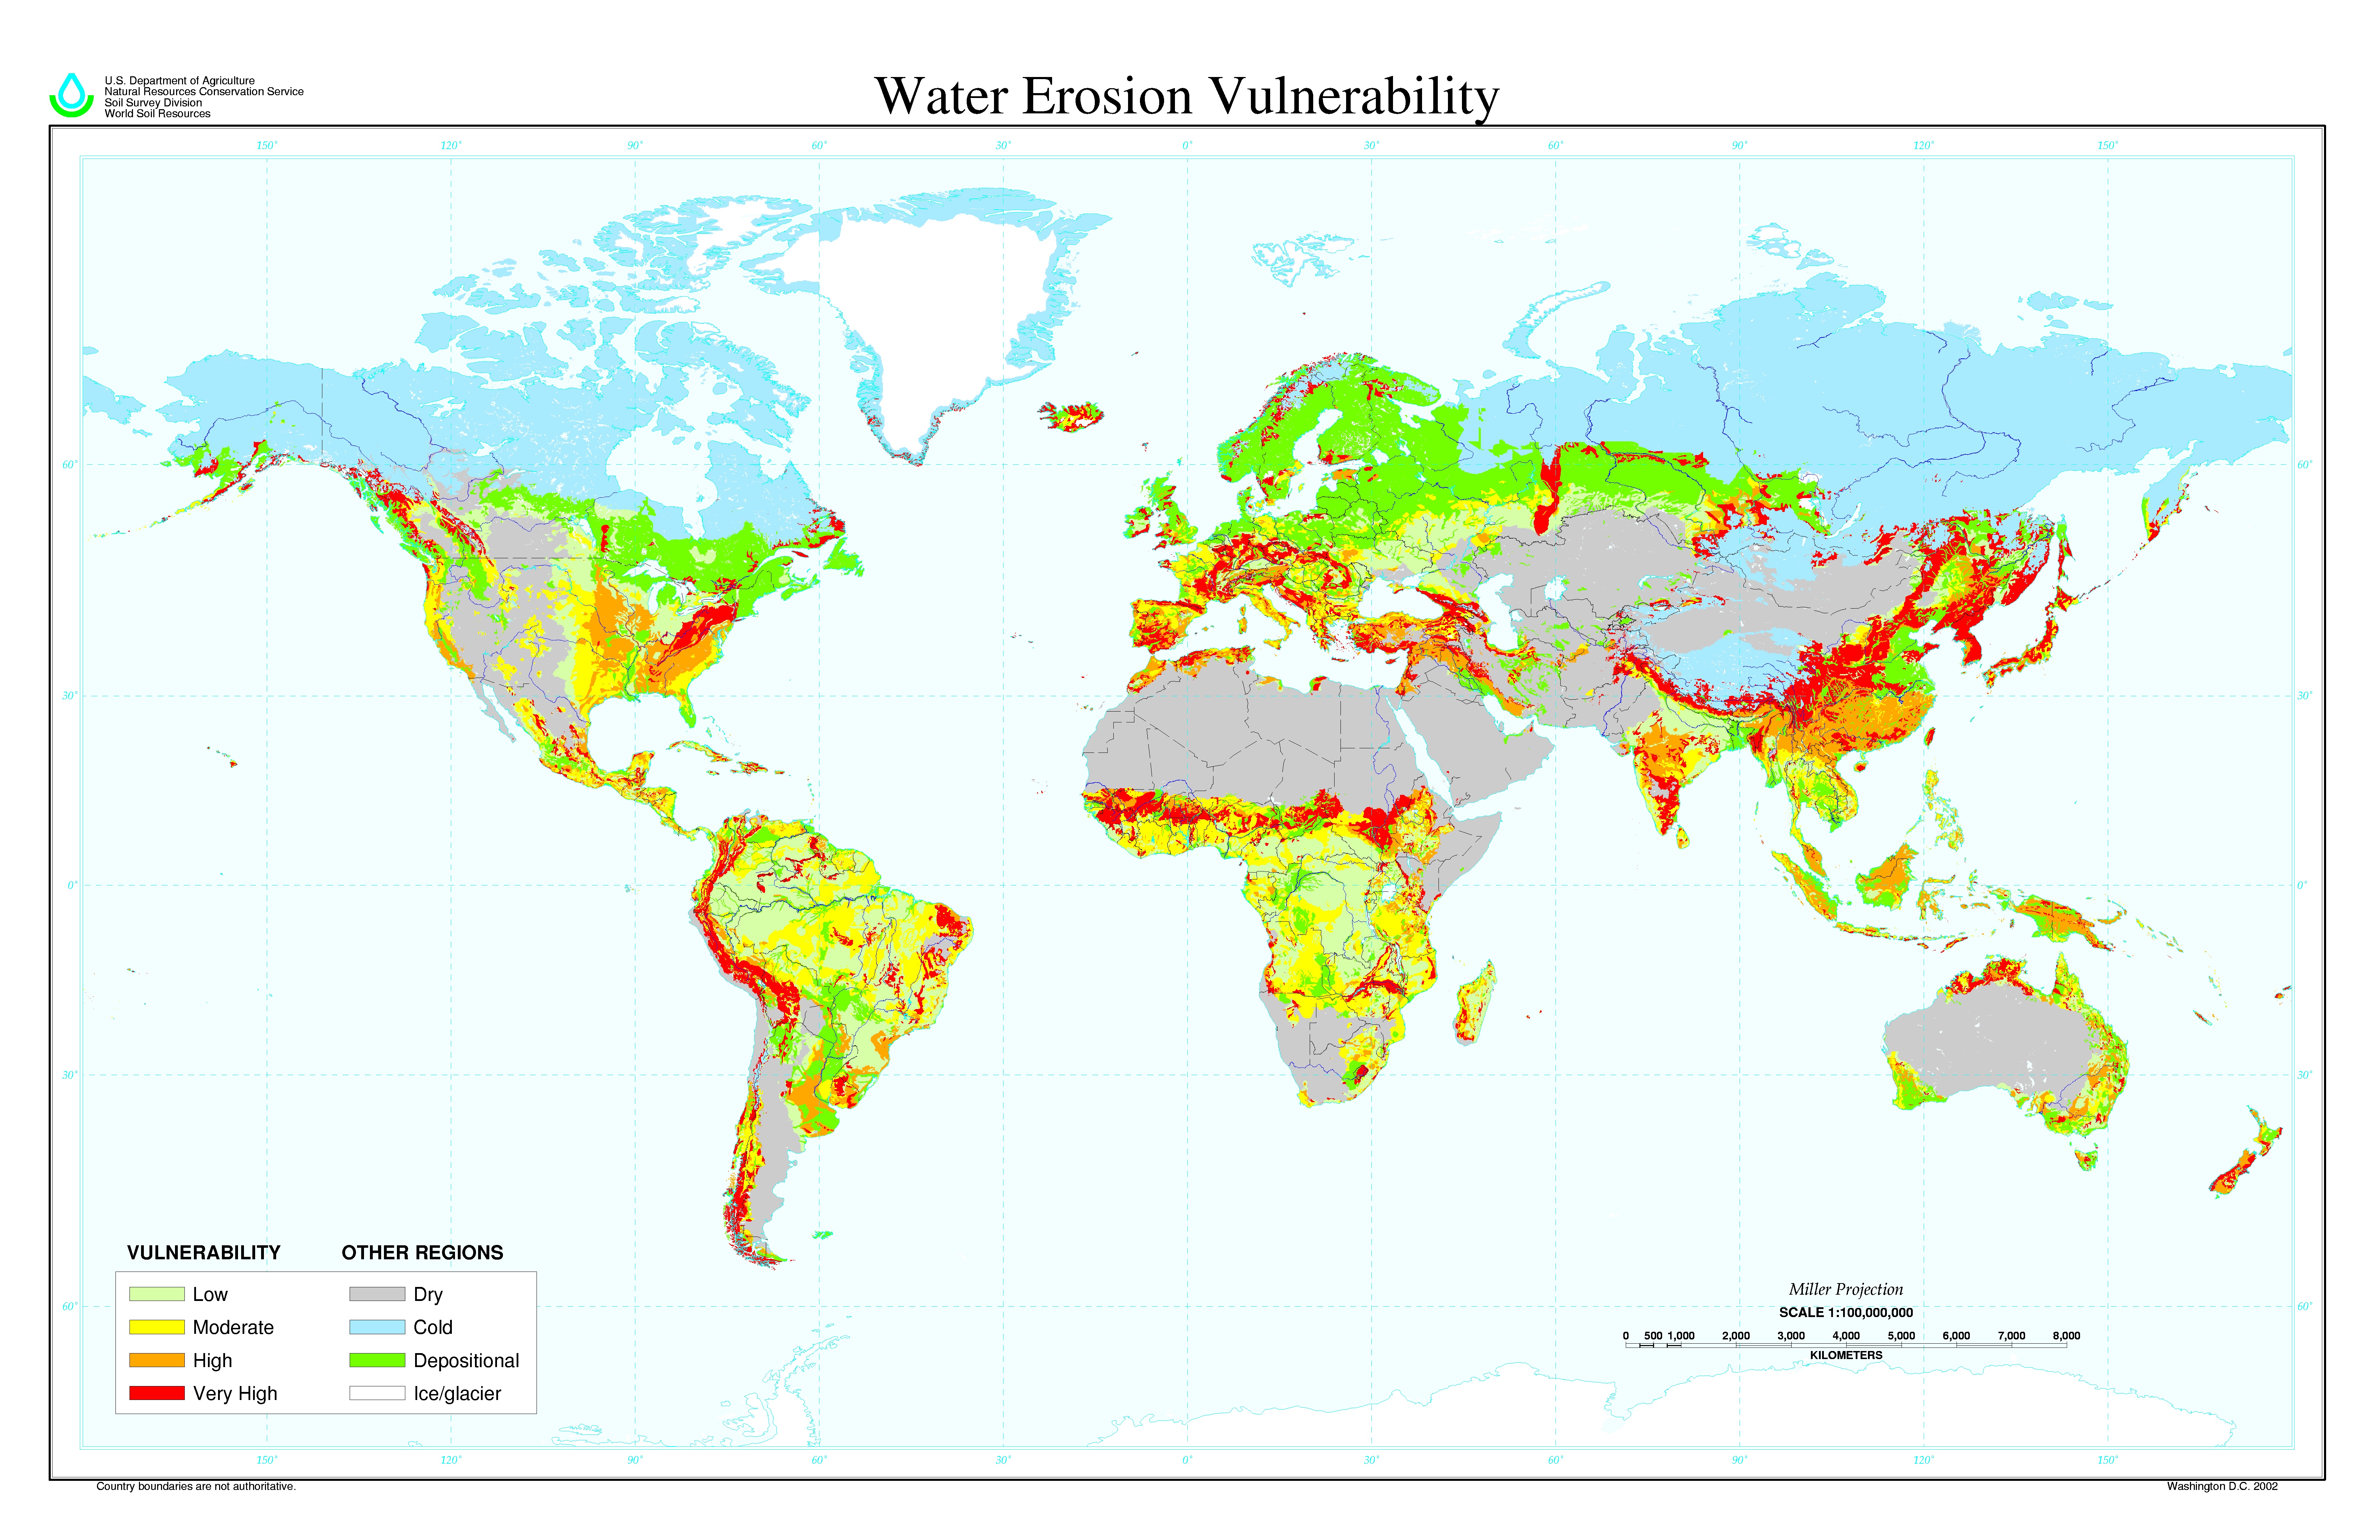 Un mapa mundial que identifica áreas vulnerables a la erosión hídrica